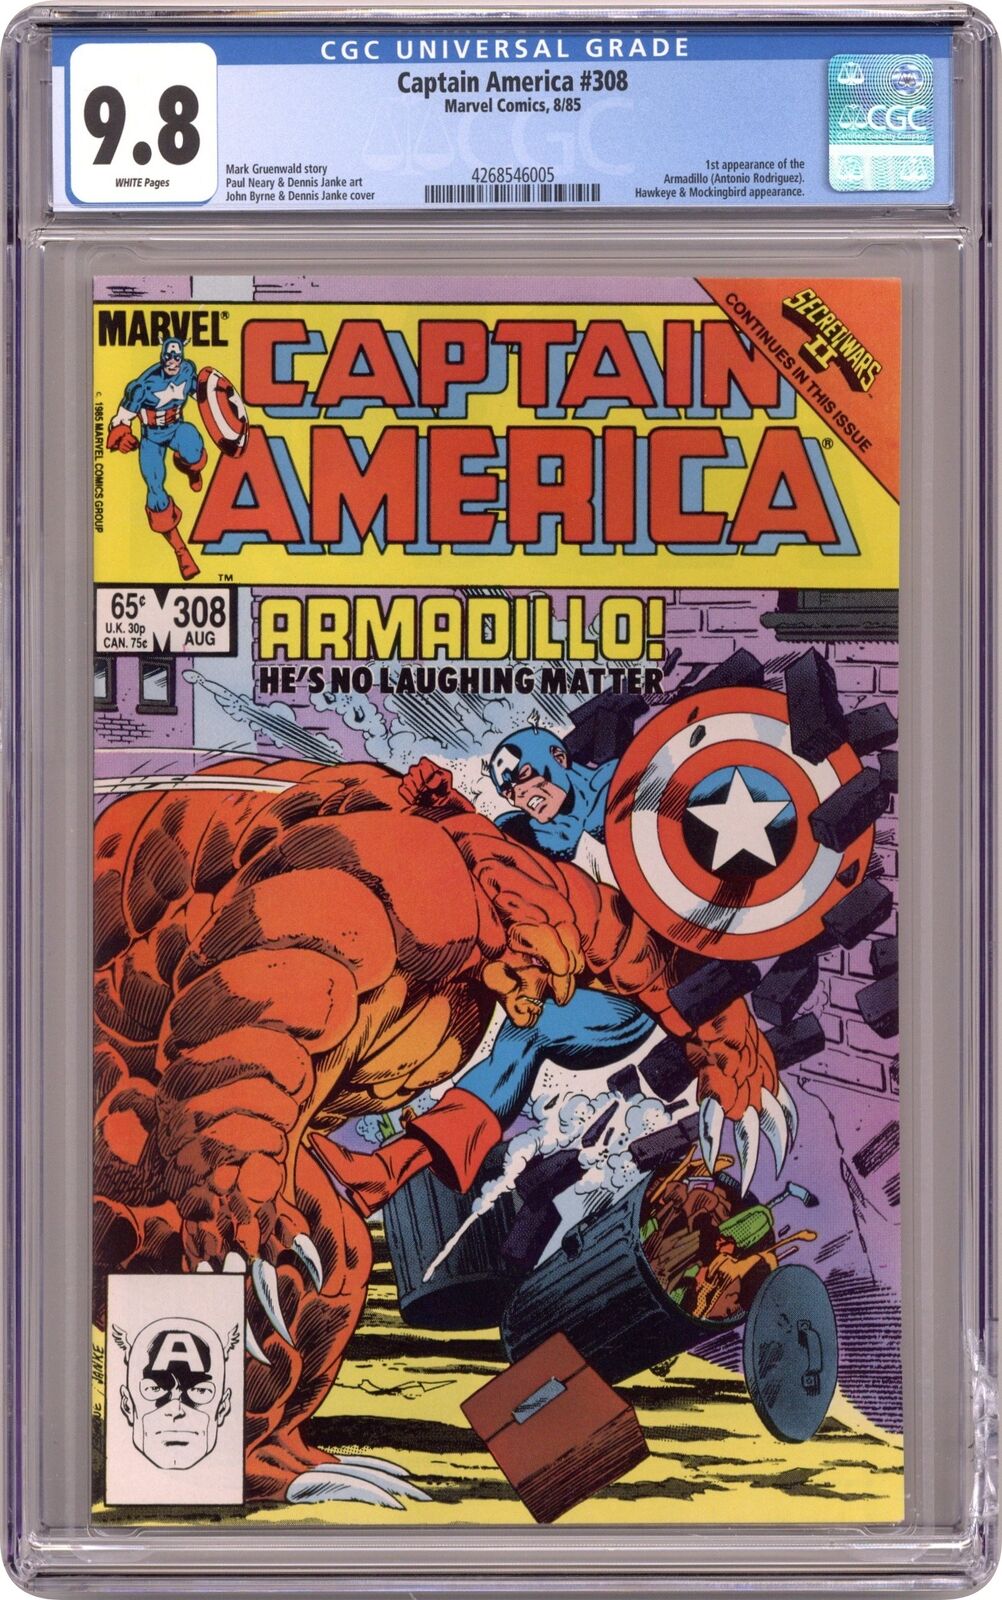 Captain America #308 CGC 9.8 1985 4268546005